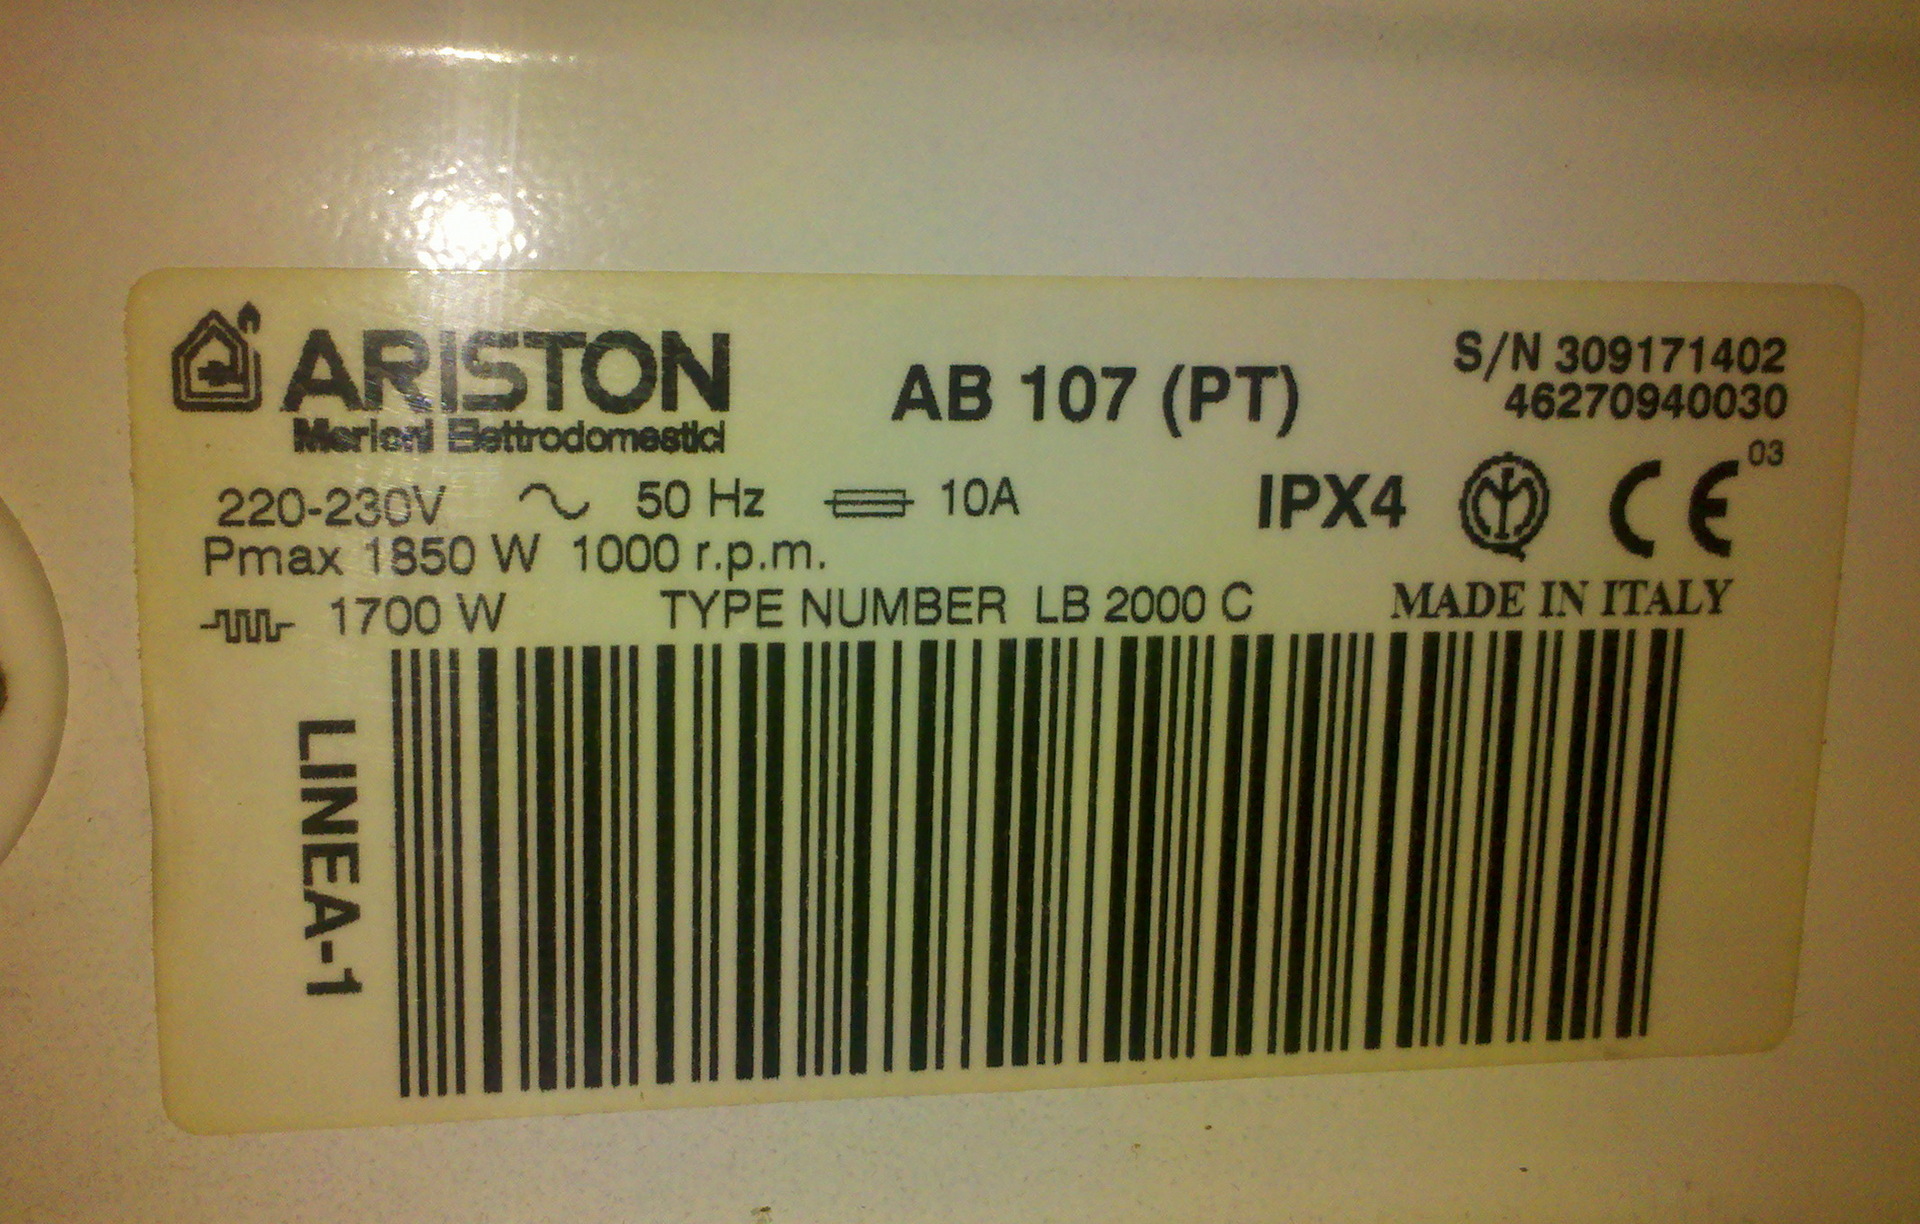 Ariston ремонт стиральной машины ariston help. Серийный номер стиральной машины. Серийный номер Аристон. Серийный номер стиральной машины Аристон.